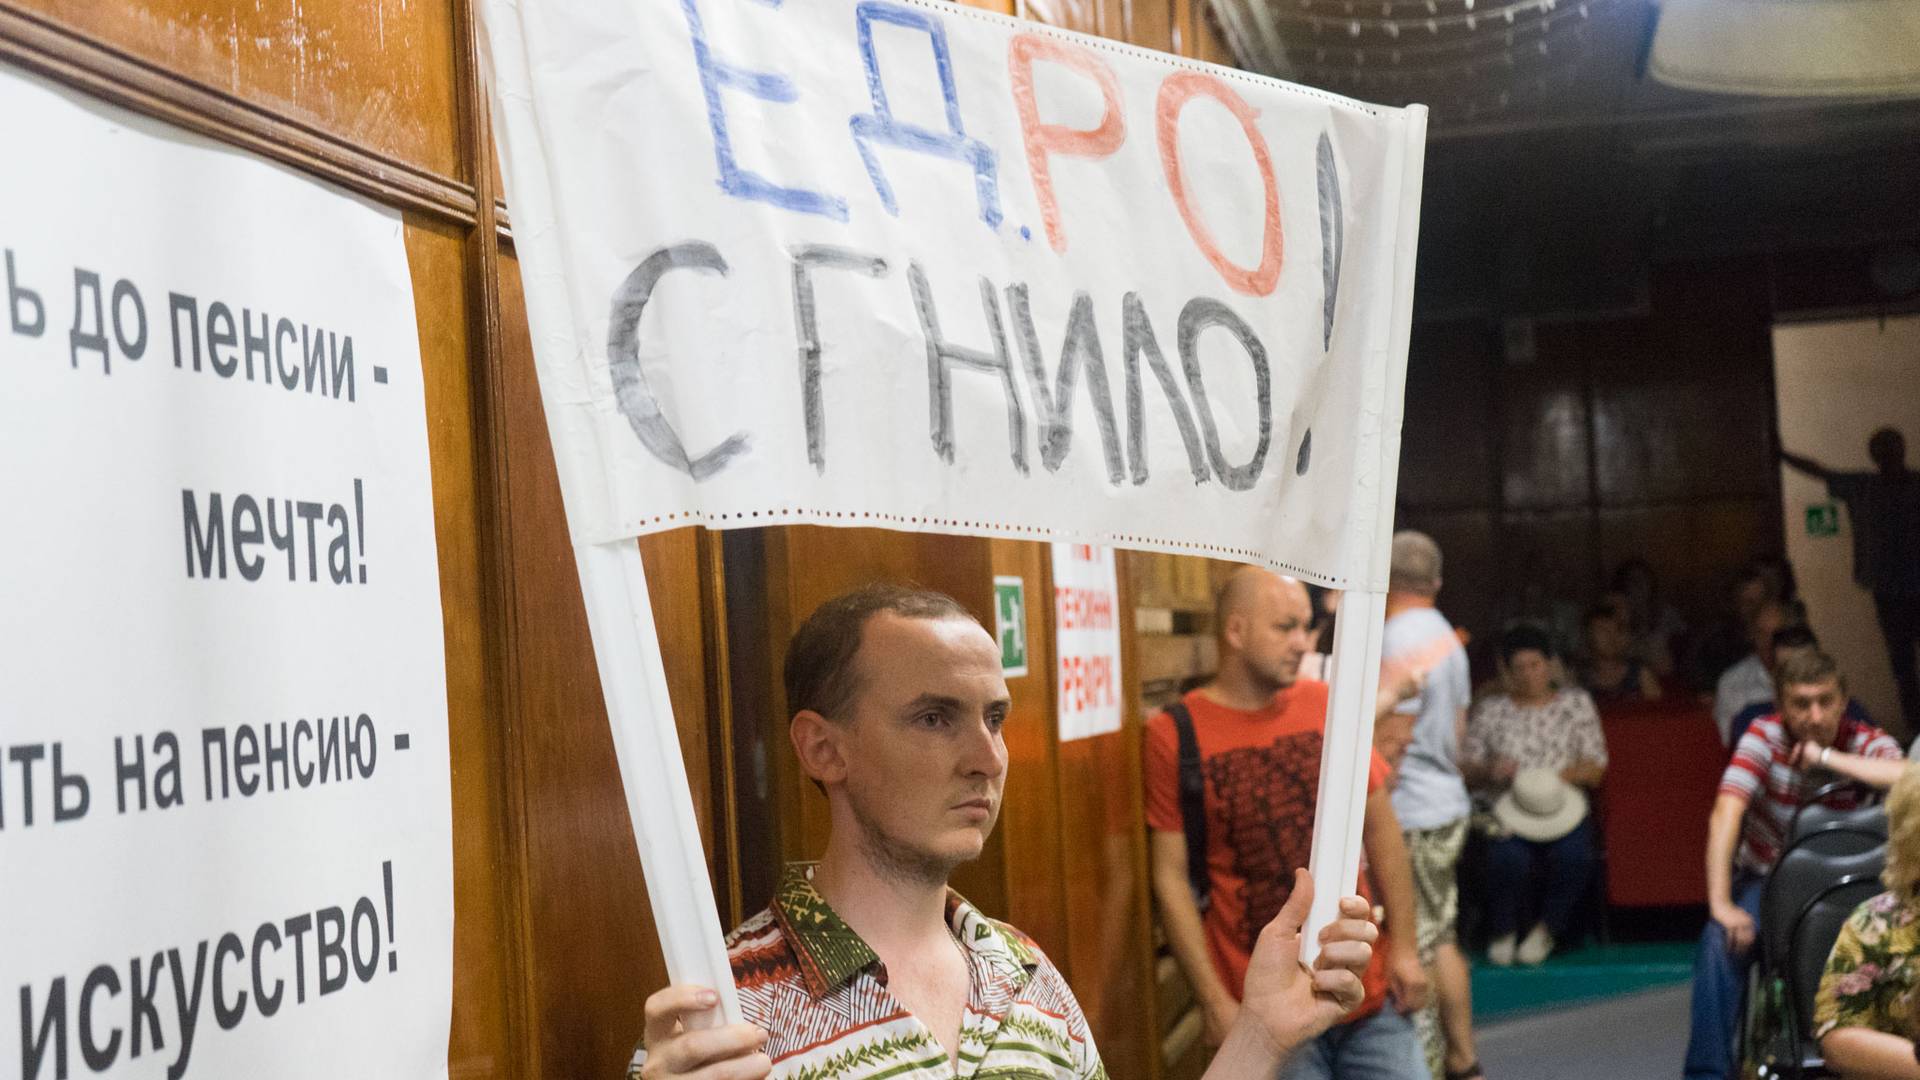 Активист держит плакат «ЕДРО Сгнило!» на собрании КПРФ против пенсионной реформы